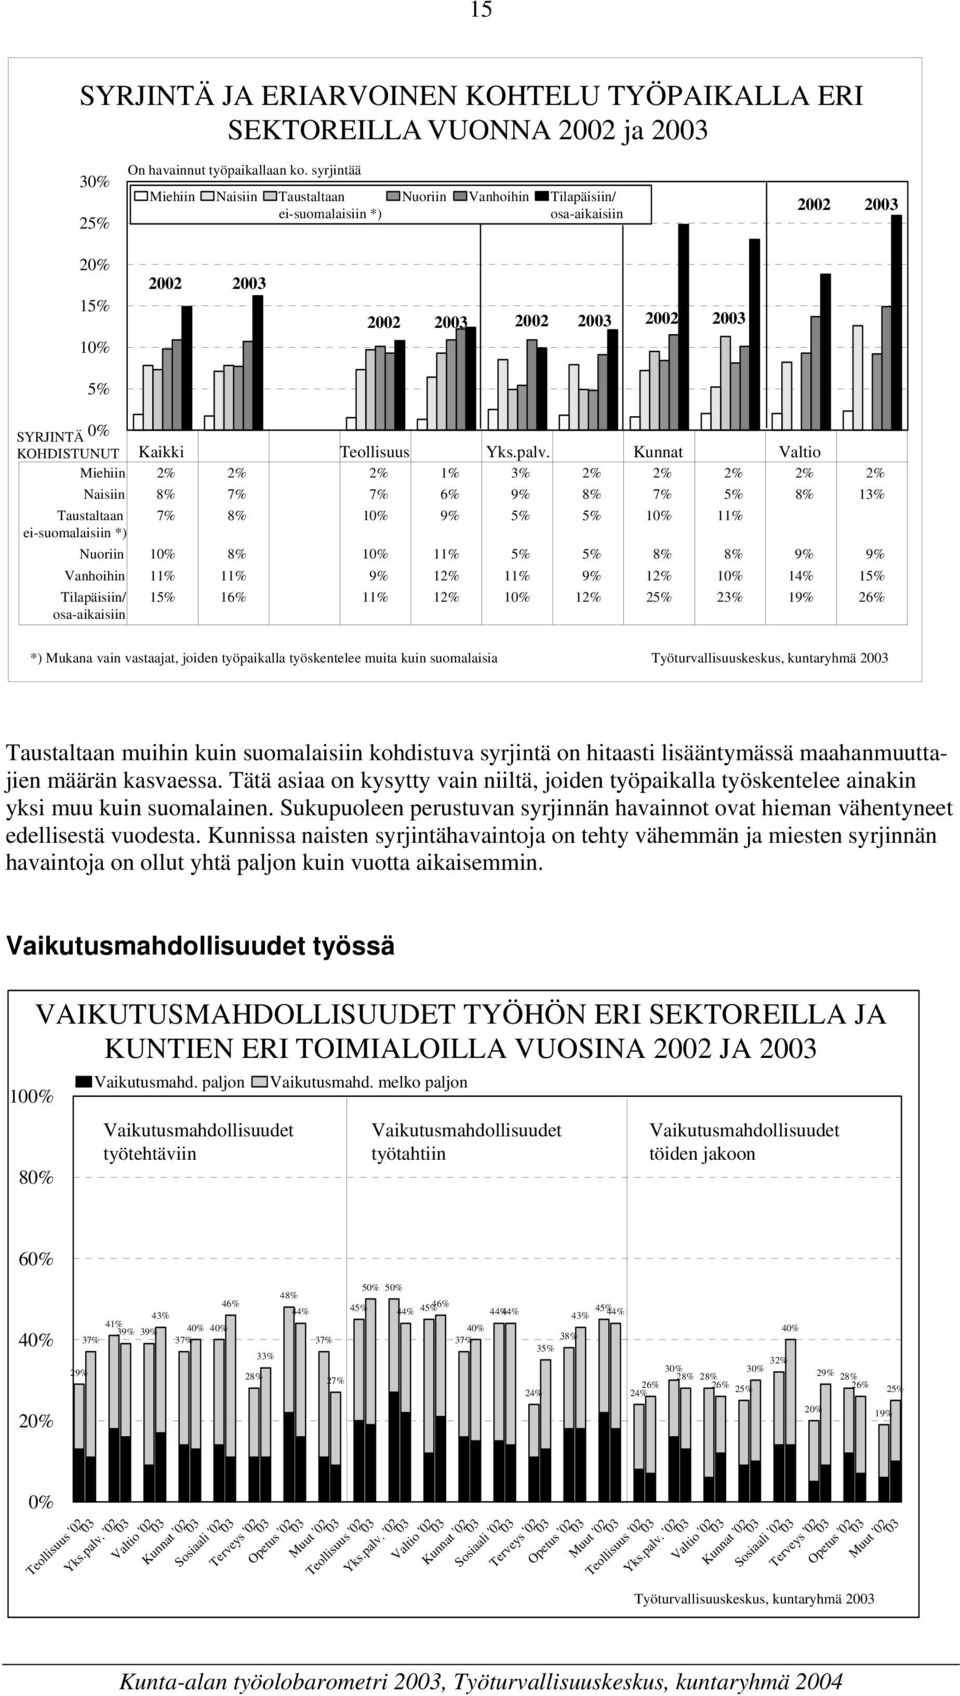 Kunnat Valtio Miehiin 2% 2% 2% 1% 3% 2% 2% 2% 2% 2% Taustaltaan ei-suomalaisiin *) Naisiin 8% 7% 7% 6% 9% 8% 7% 5% 8% 13% 7% 8% 10% 9% 5% 5% 10% 11% Nuoriin 10% 8% 10% 11% 5% 5% 8% 8% 9% 9% Vanhoihin